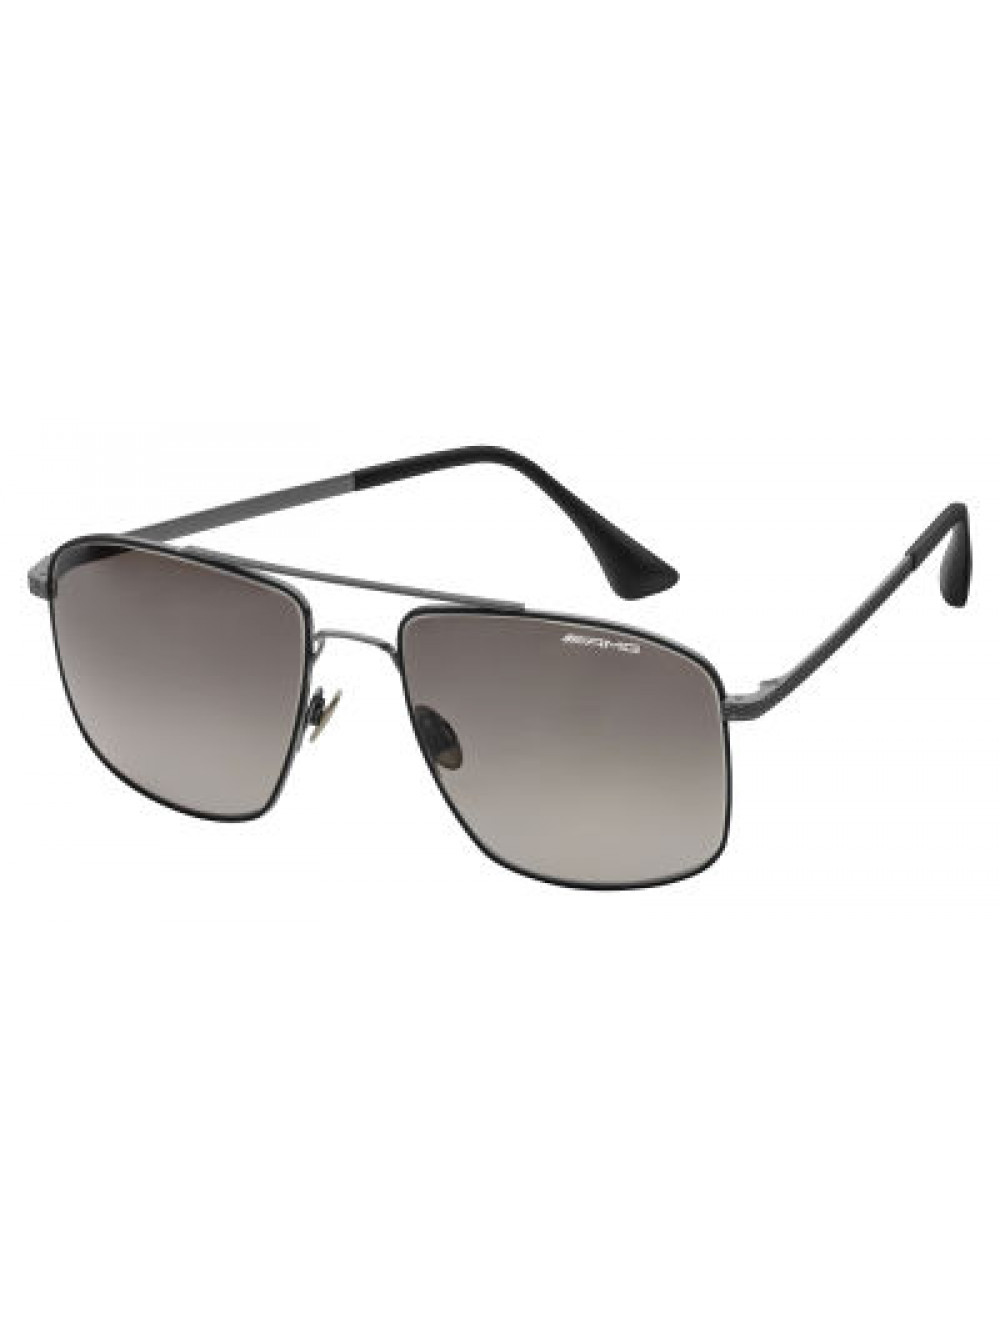 Солнцезащитные очки Mercedes-AMG Sunglasses, Business, Dark Gun